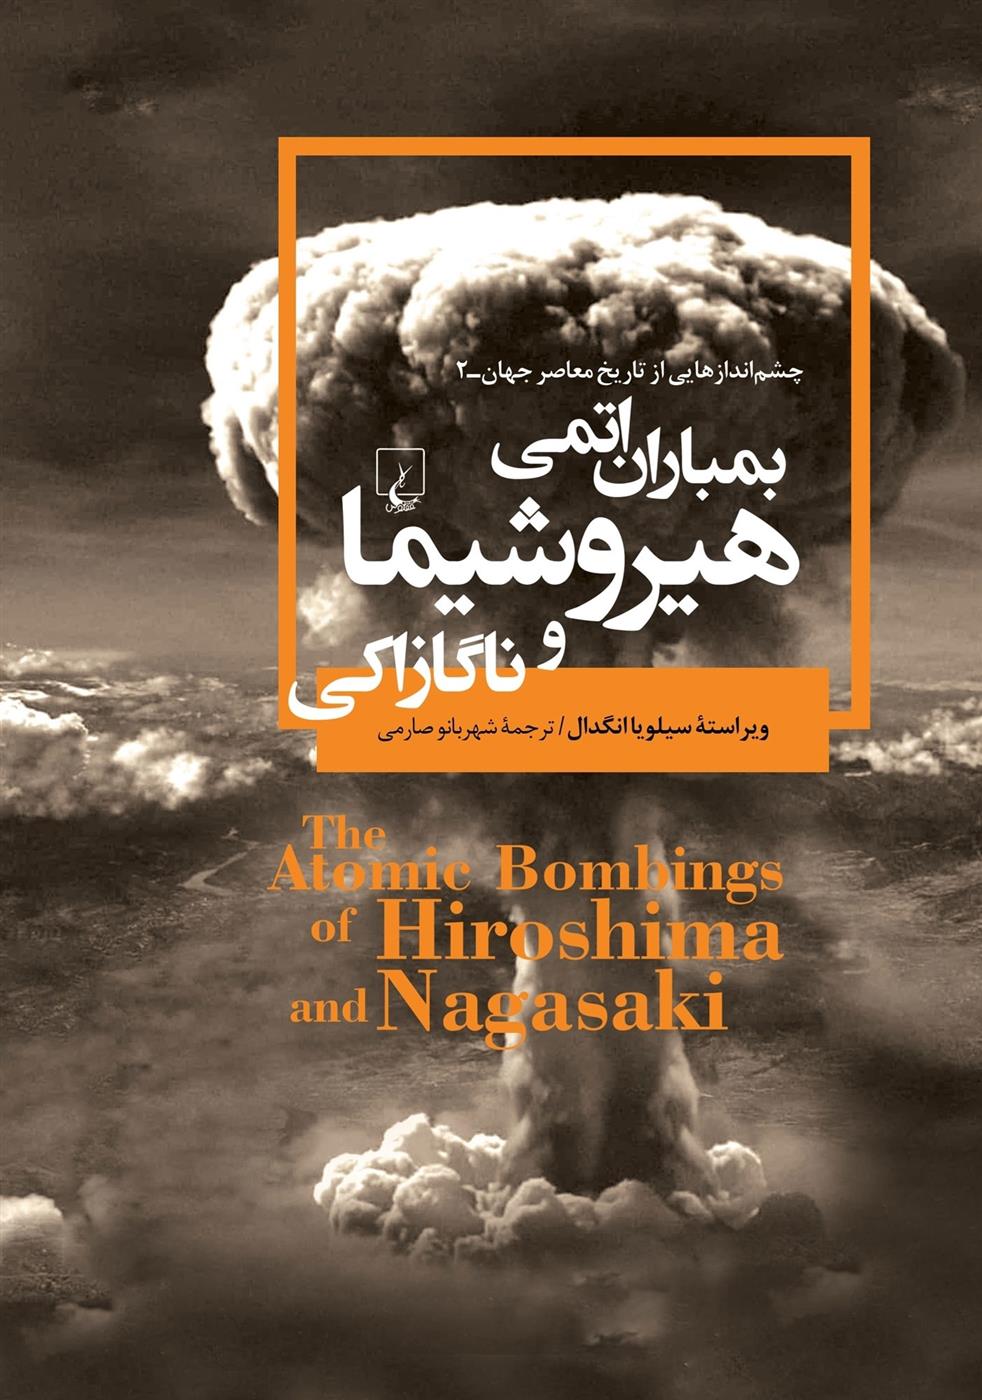 کتاب بمباران اتمی هیروشیما و ناگازاکی;